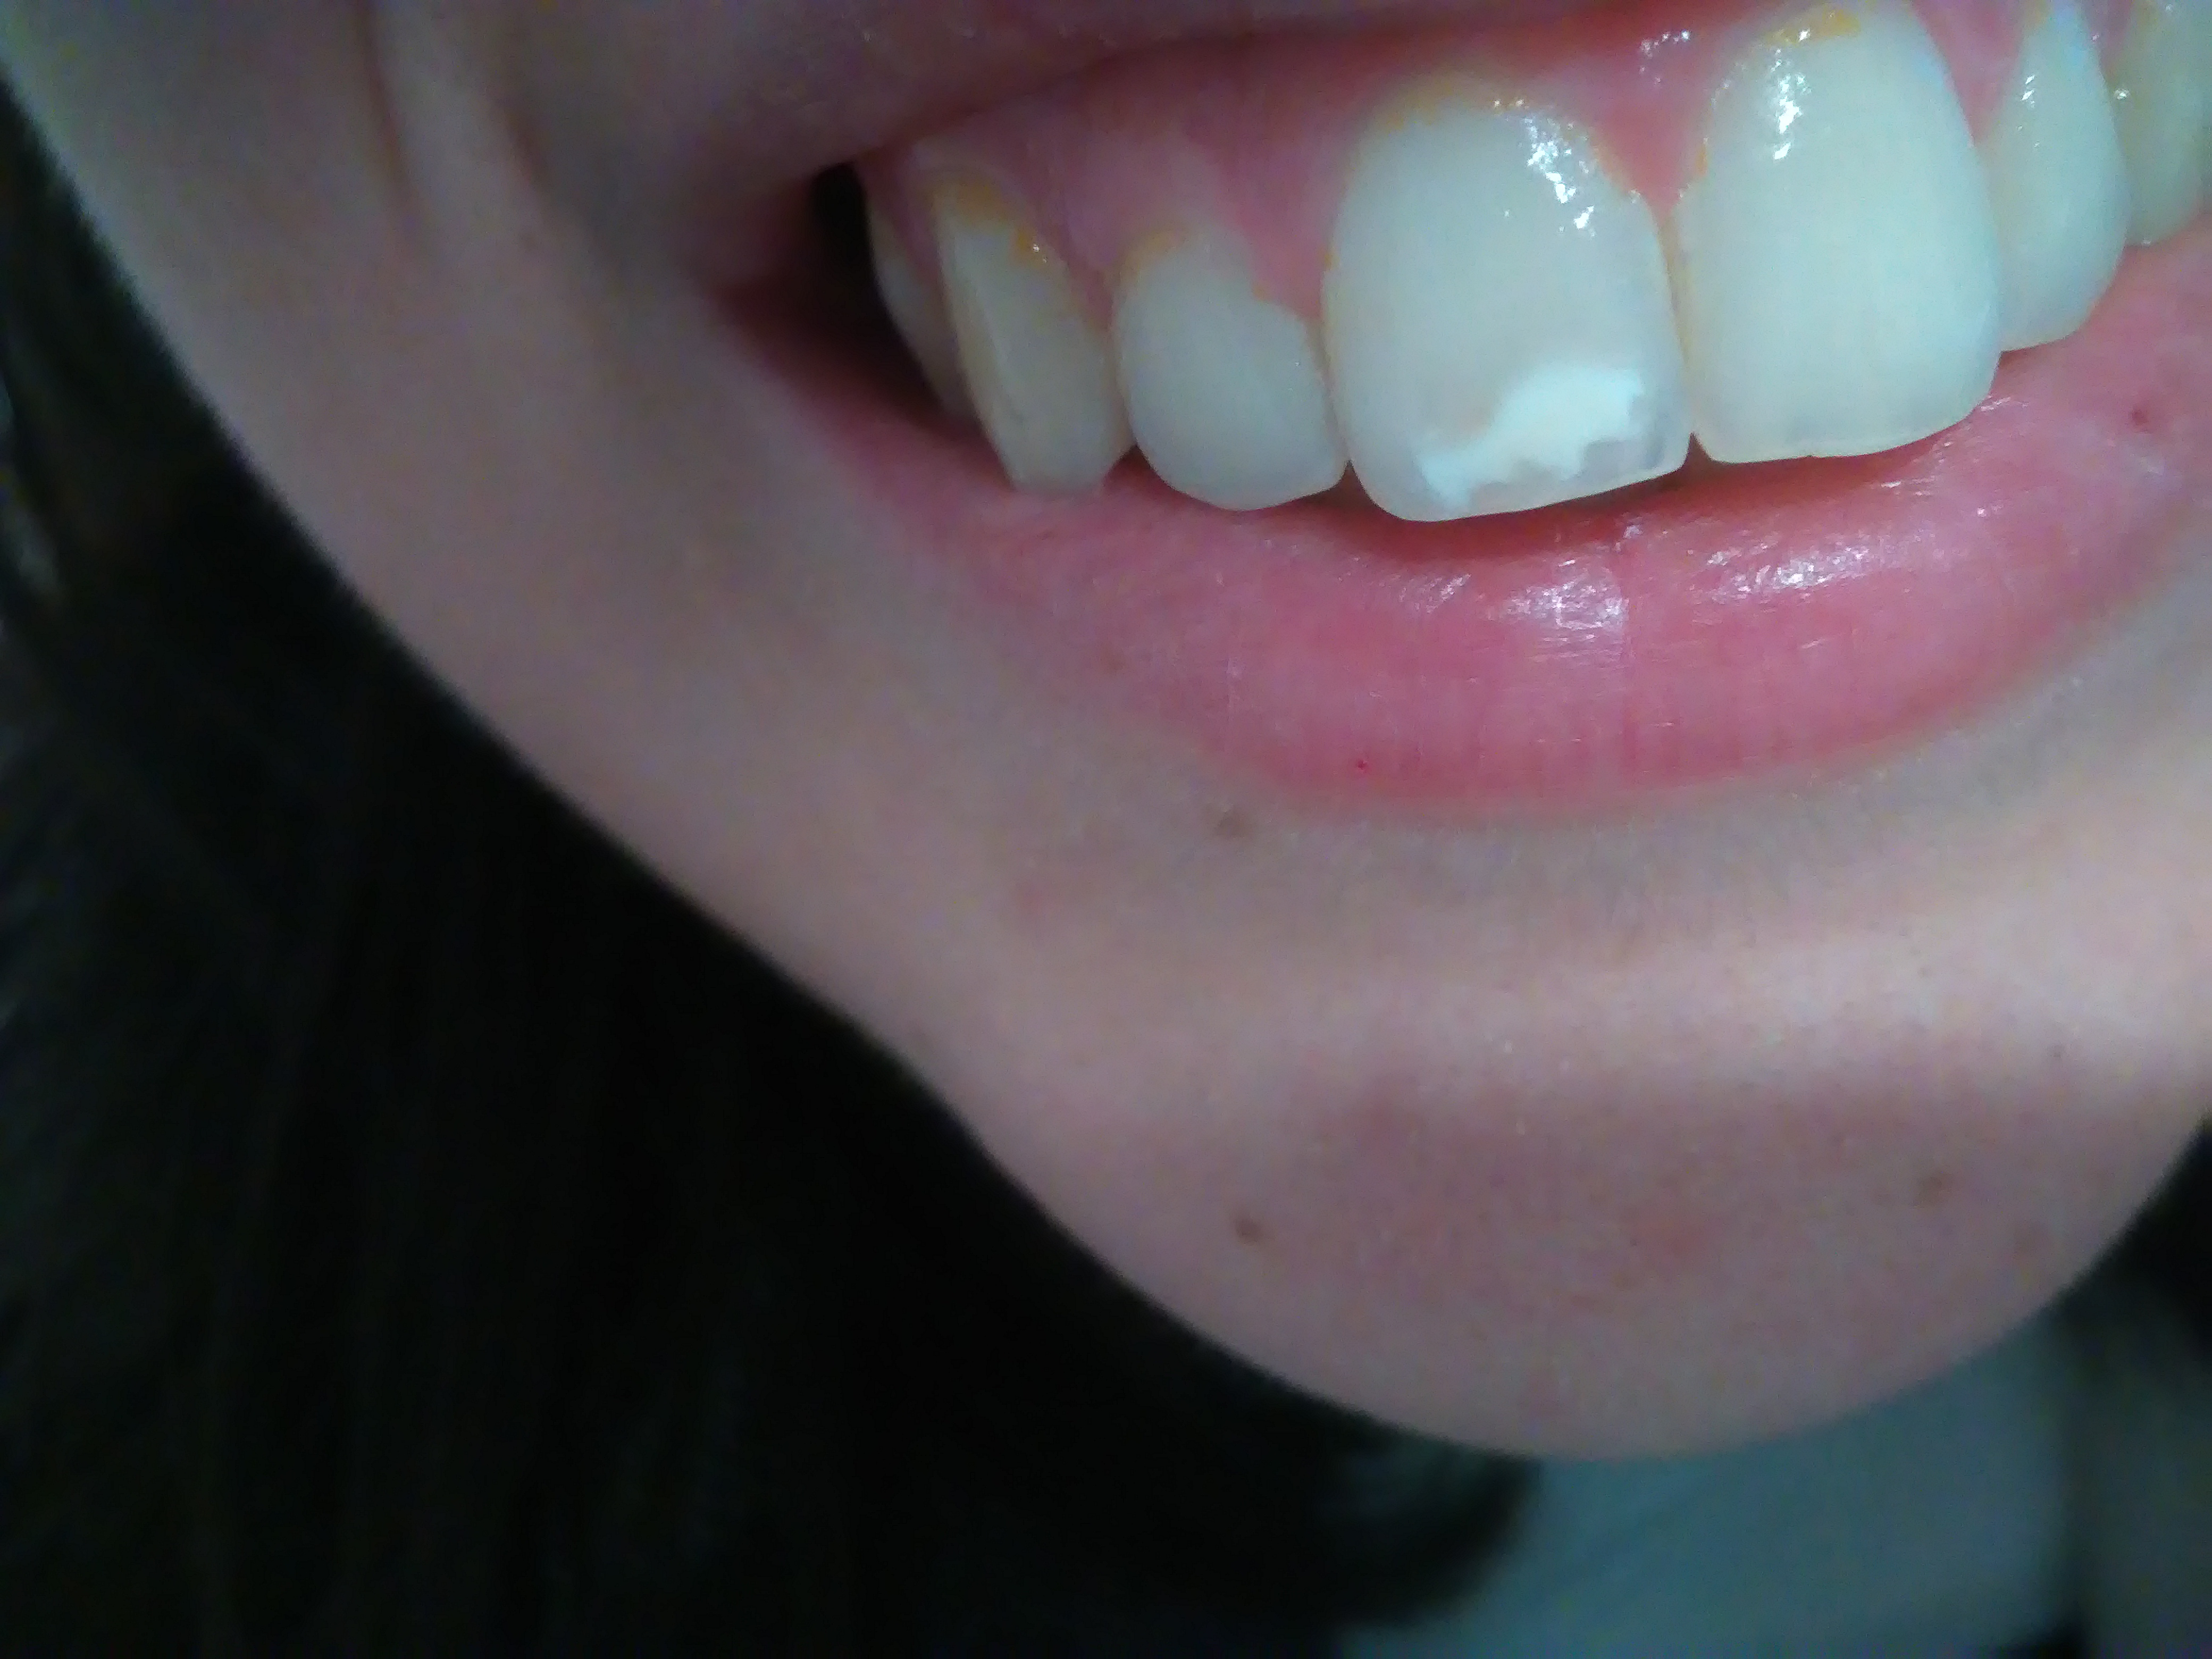 Patina arancione sui denti superiori: è rimovibile, cosa potrebbe essere?